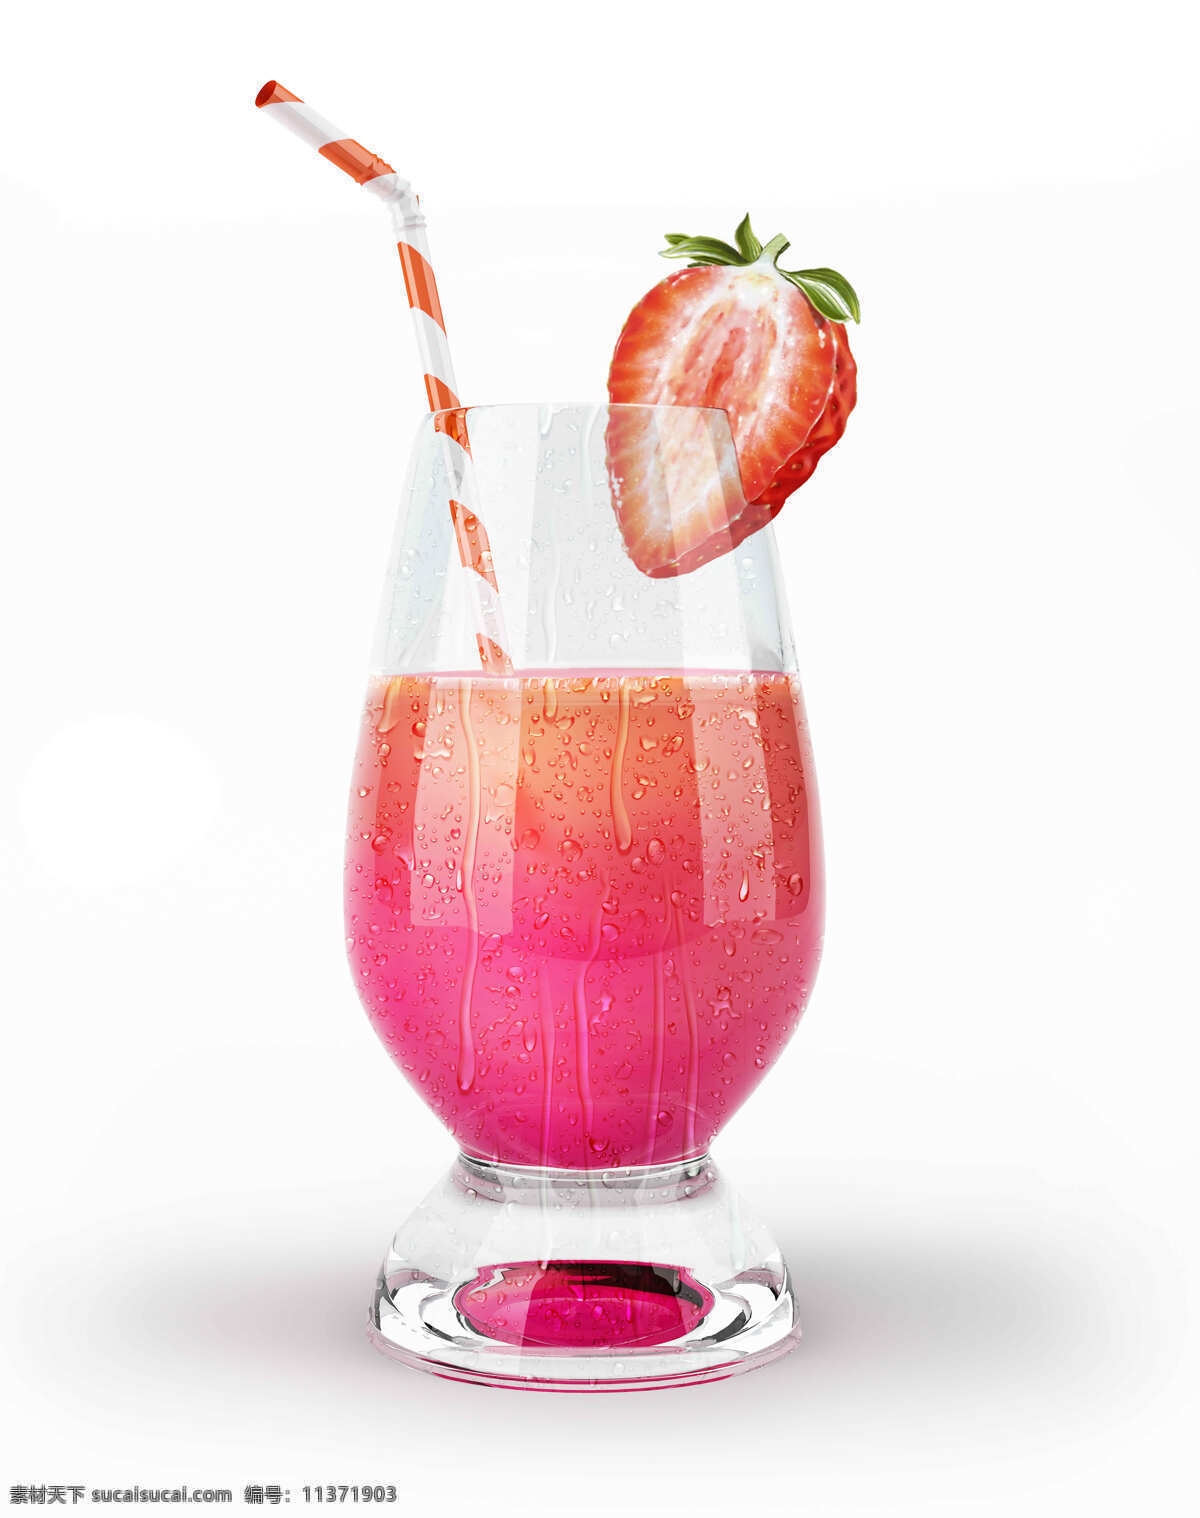 高清 草莓汁 玻璃杯 果汁饮料 吸管 水果榨汁 风景 生活 旅游餐饮